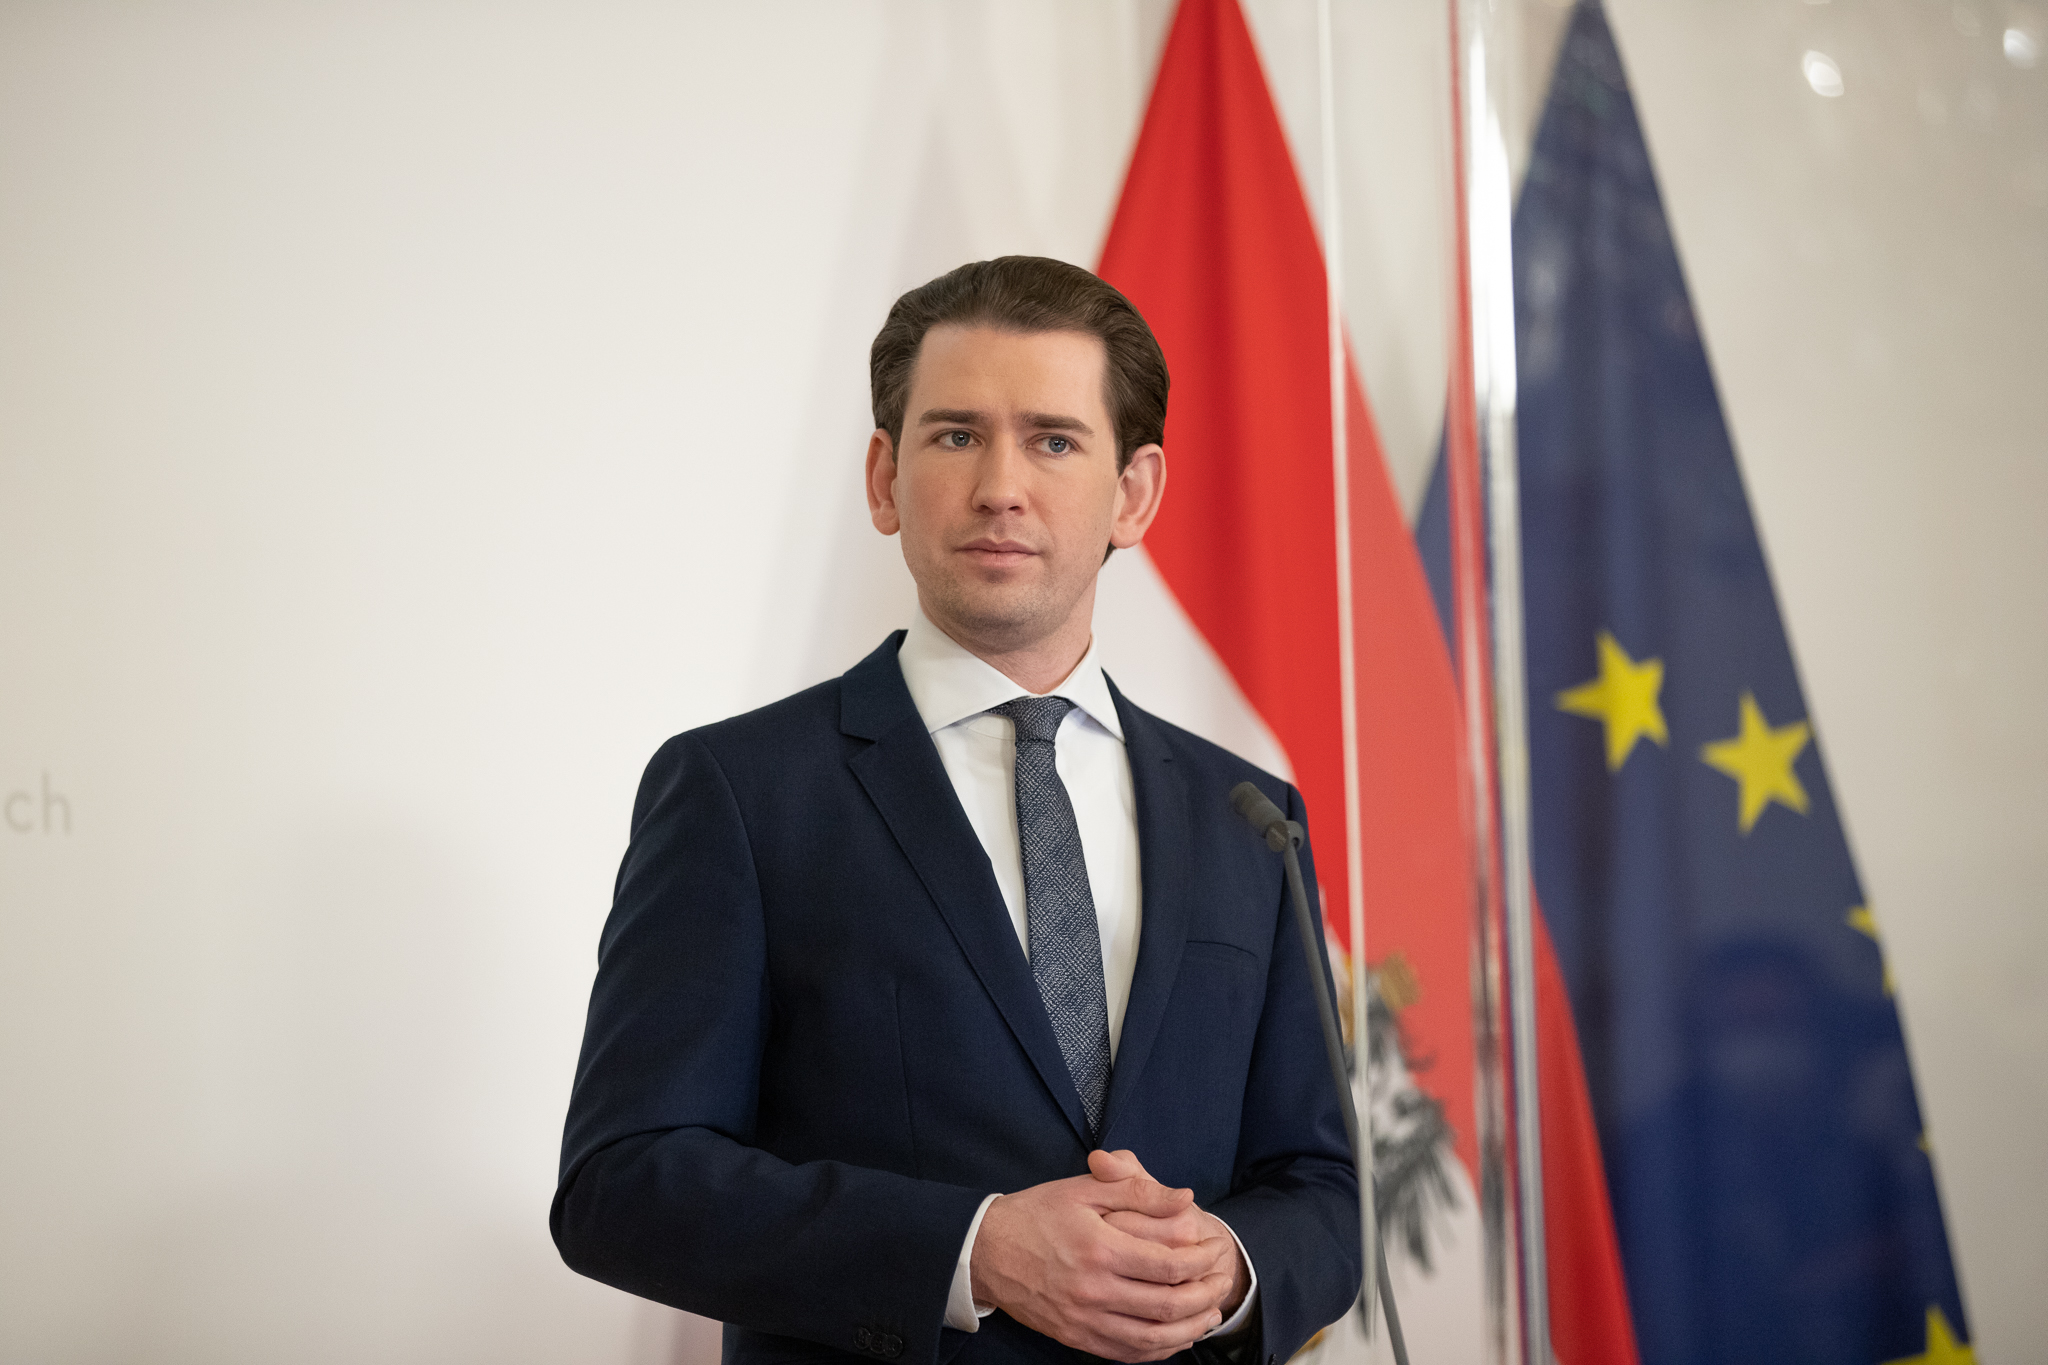 KURZ OD EU TRAŽI UVOĐENJE “ZELENE PUTOVNICE”: U protivnom Austrija poduzima korake na nacionalnoj razini